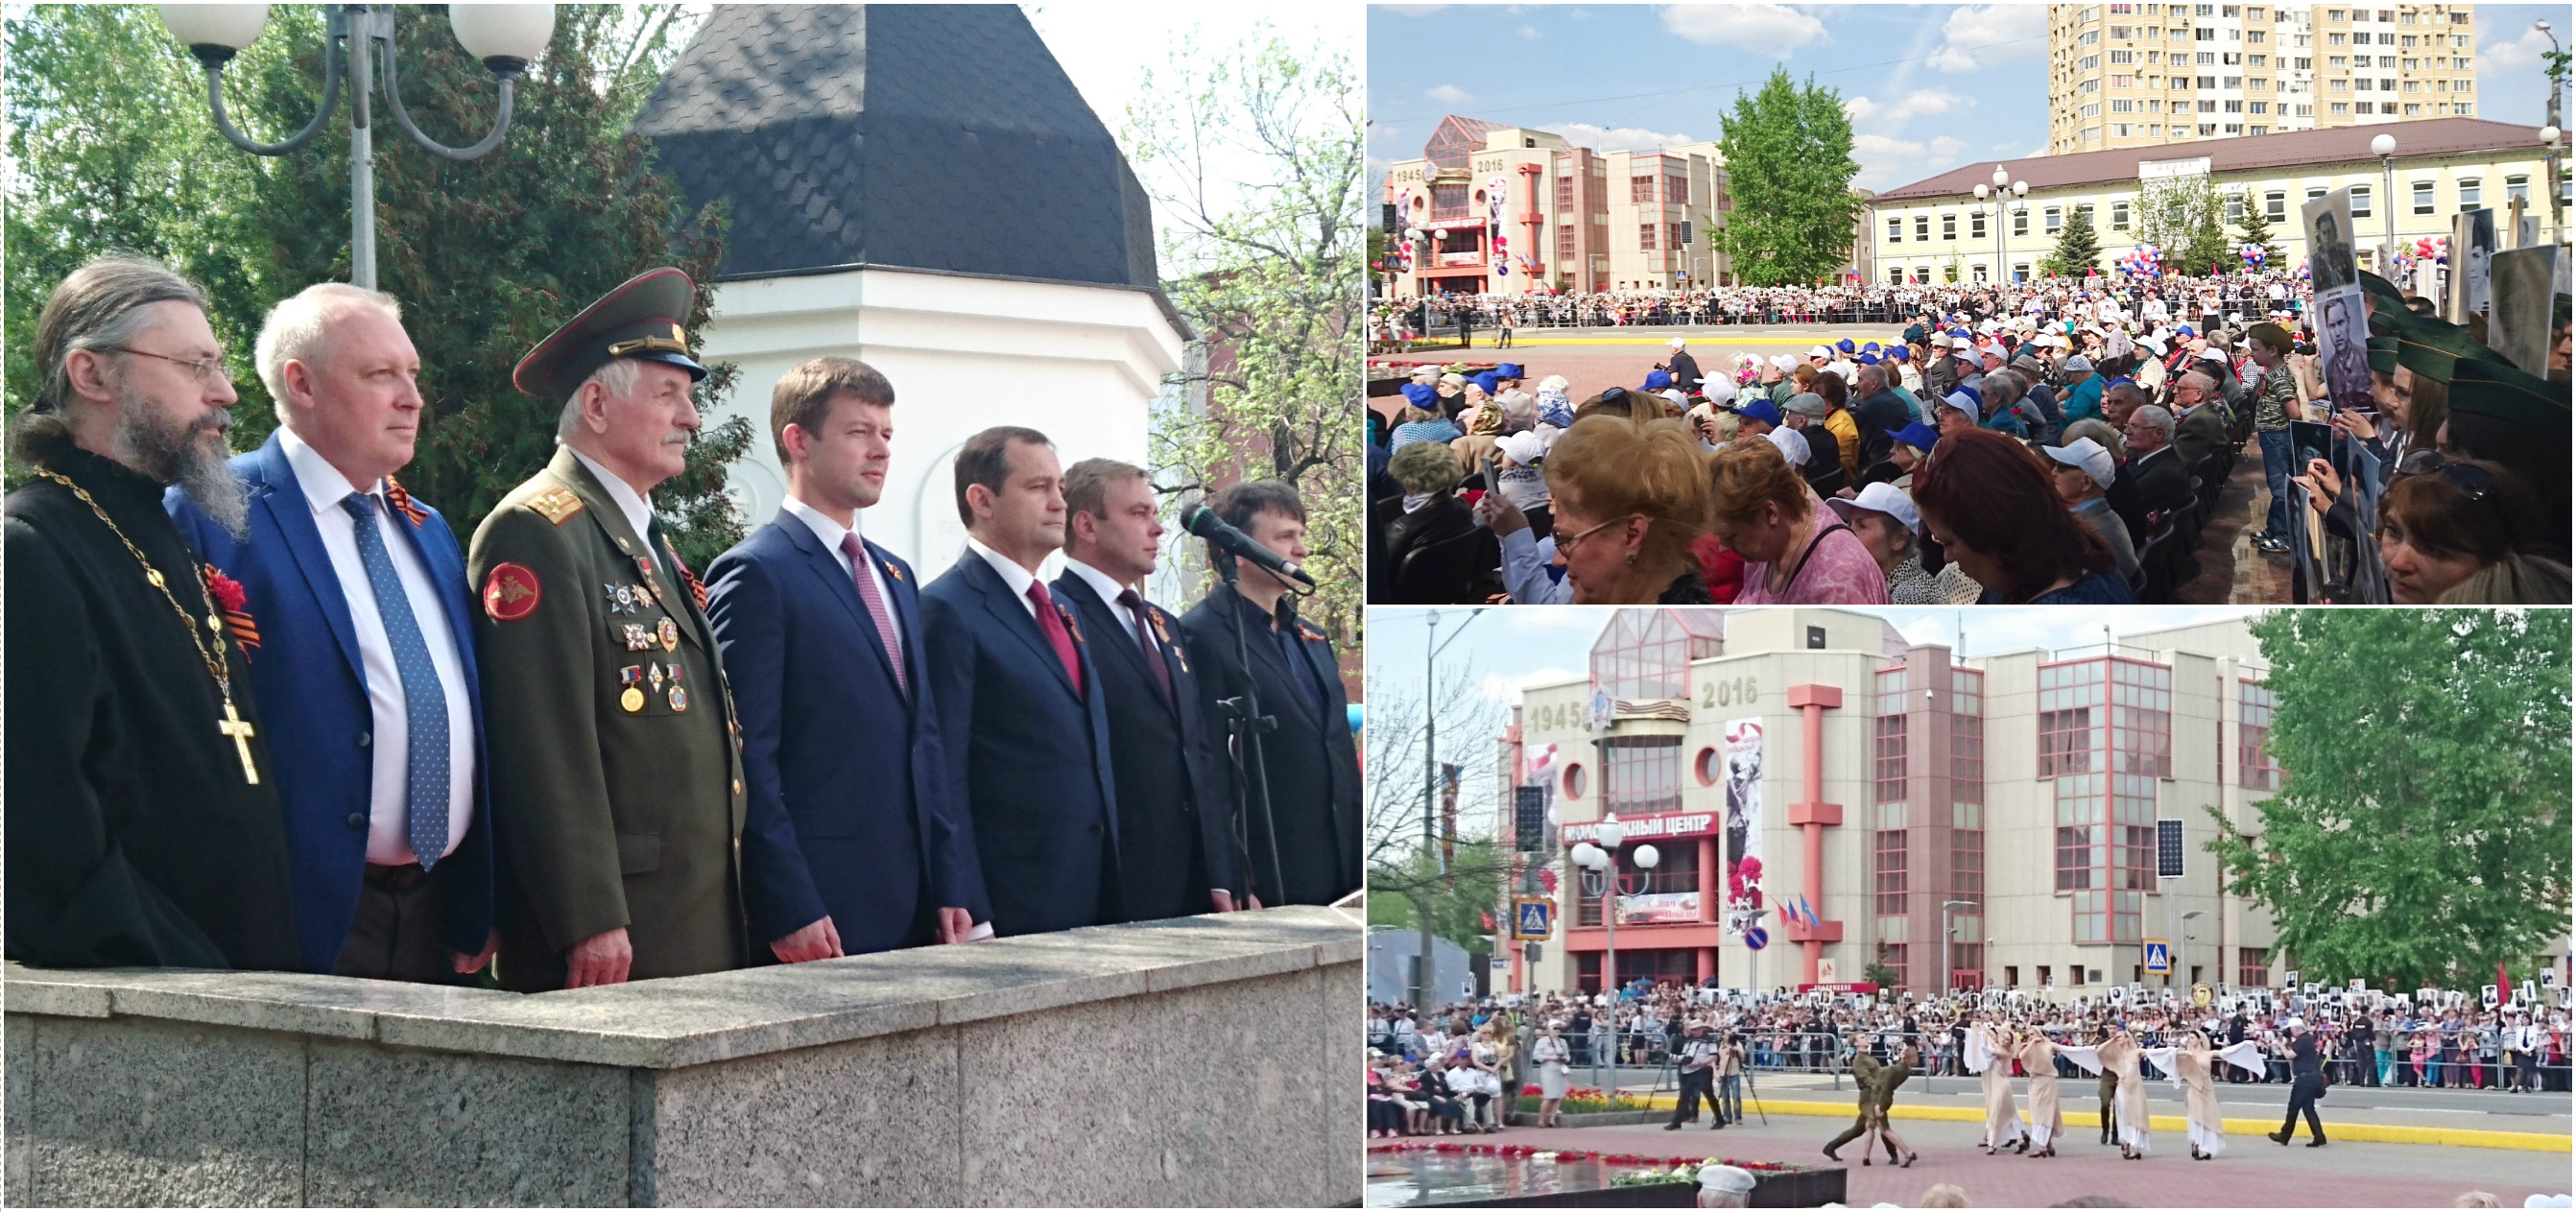 9 мая 2016 - Празднование 71-й годовщины Победы в Великой Отечественной войне в городе Реутов